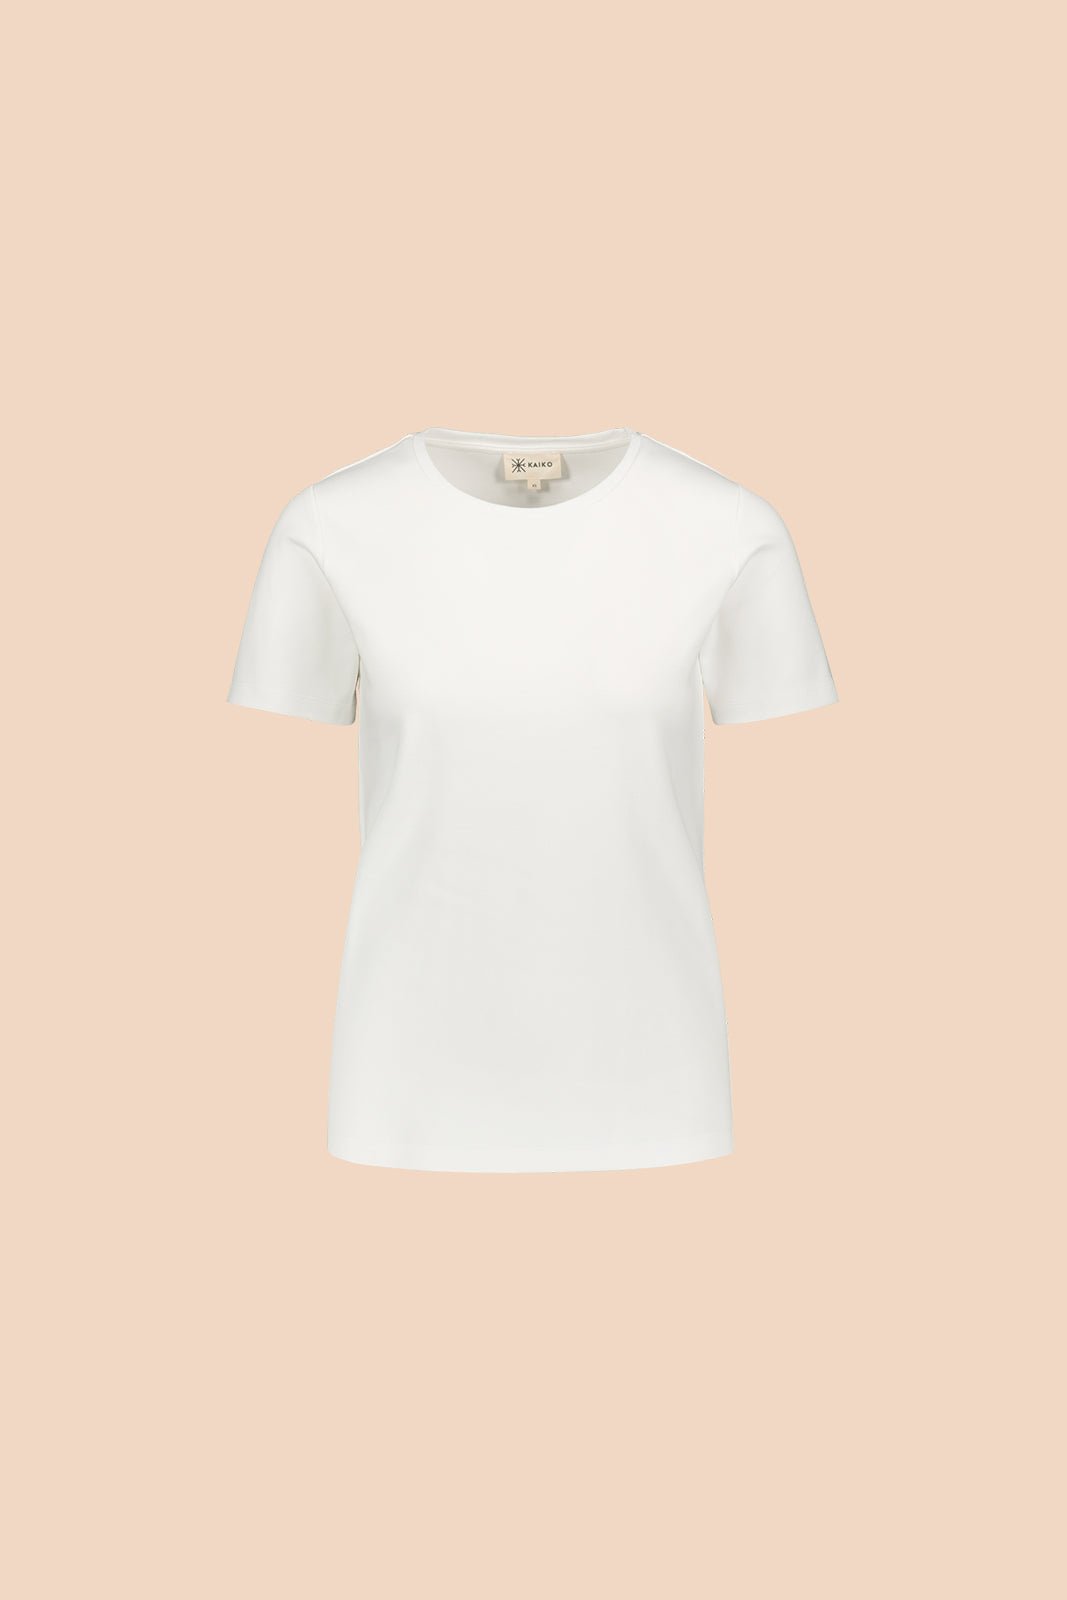 The T-Shirt Valkoinen